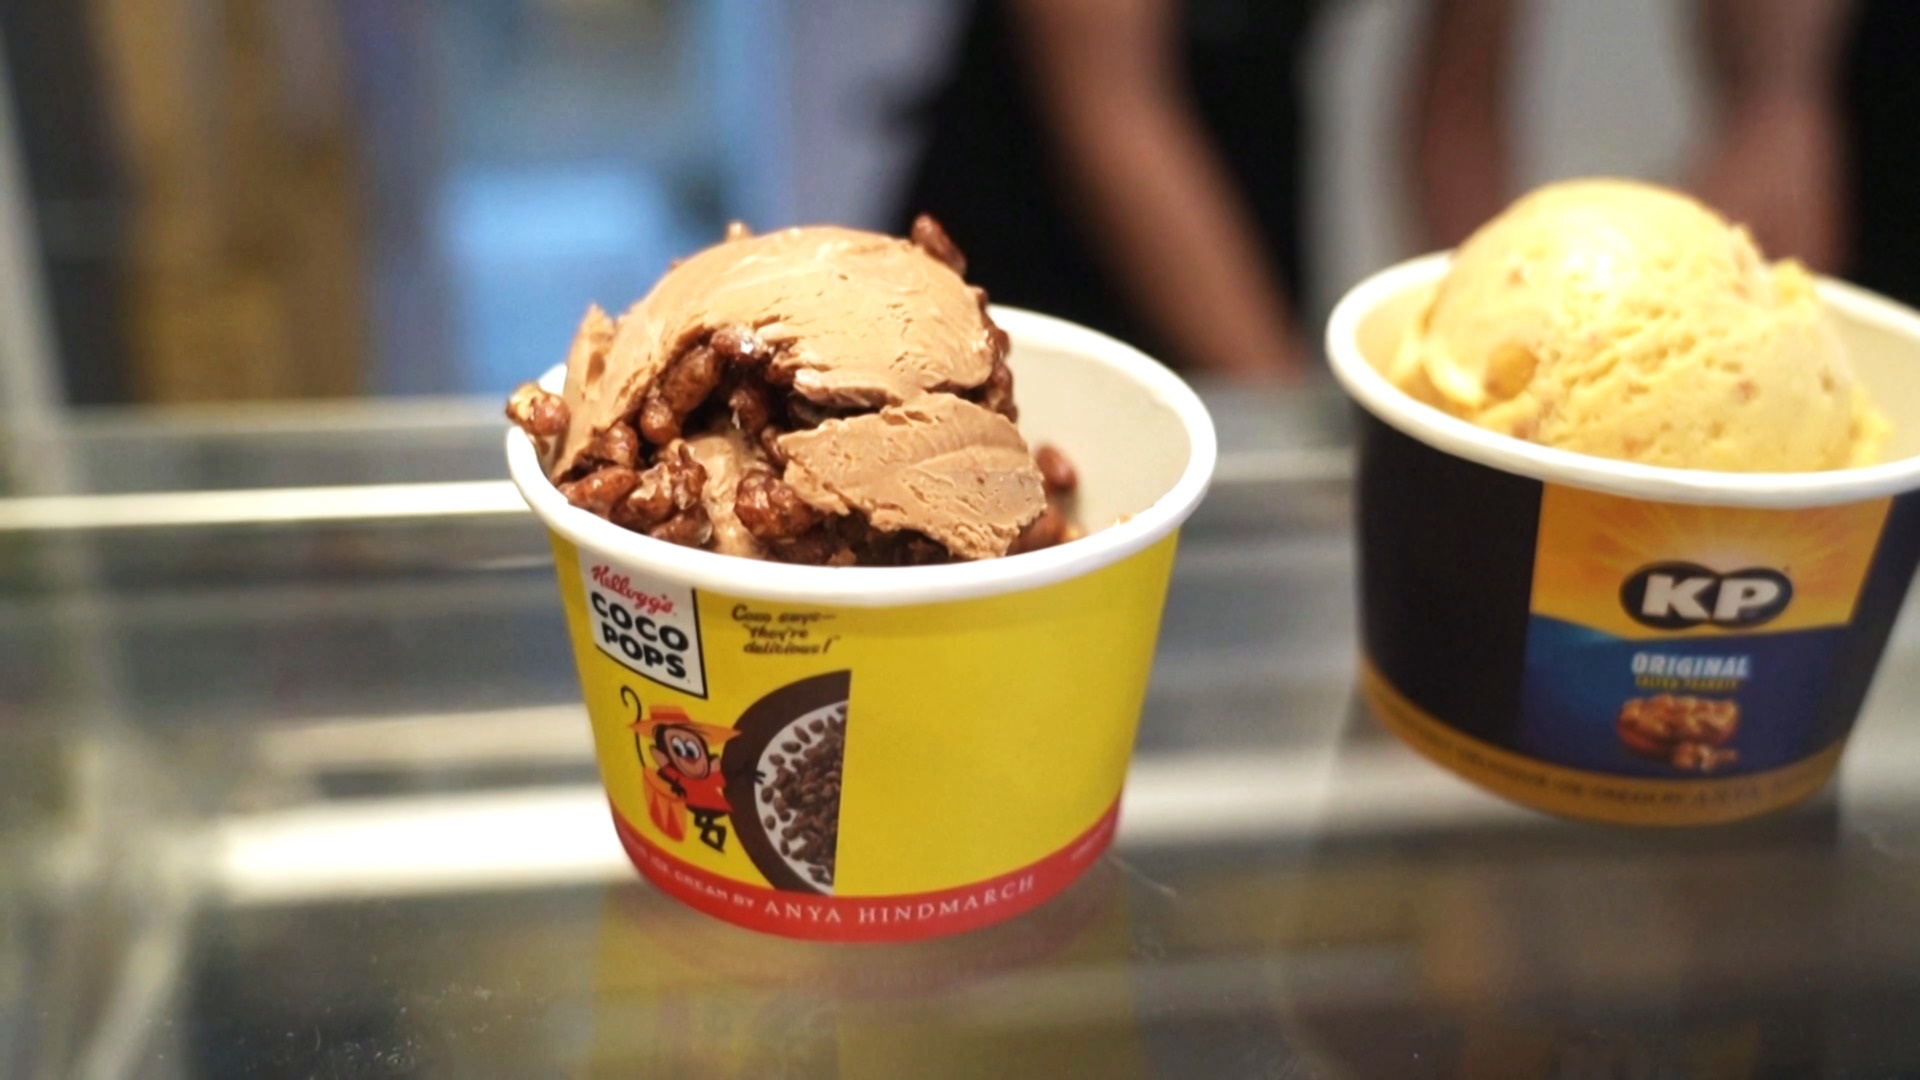 Арахис и соус чили: необычное мороженое можно попробовать в Лондоне